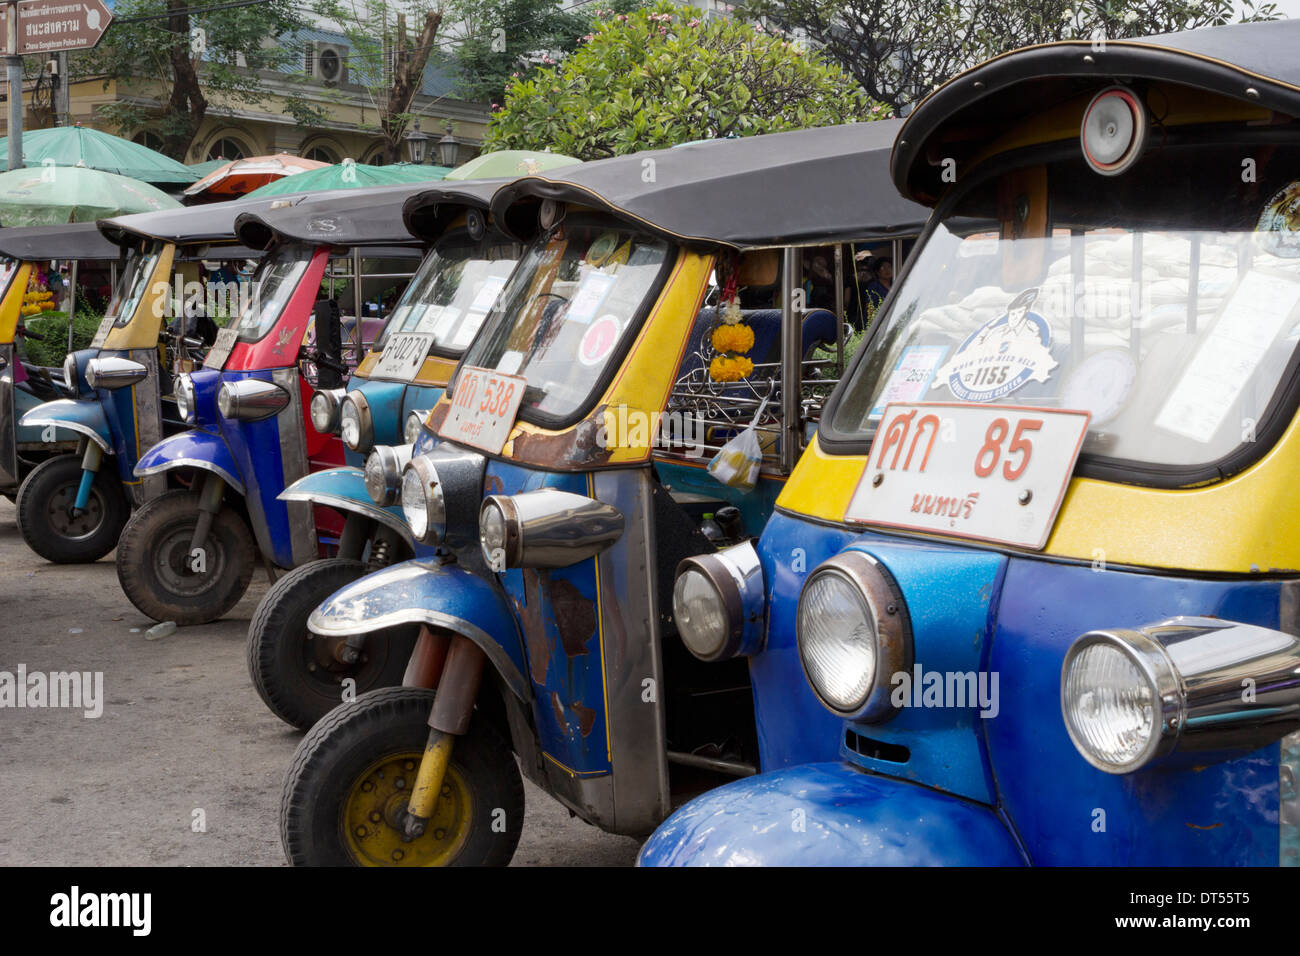 Auto rickshaws - Bangkok - Thailand Stock Photo